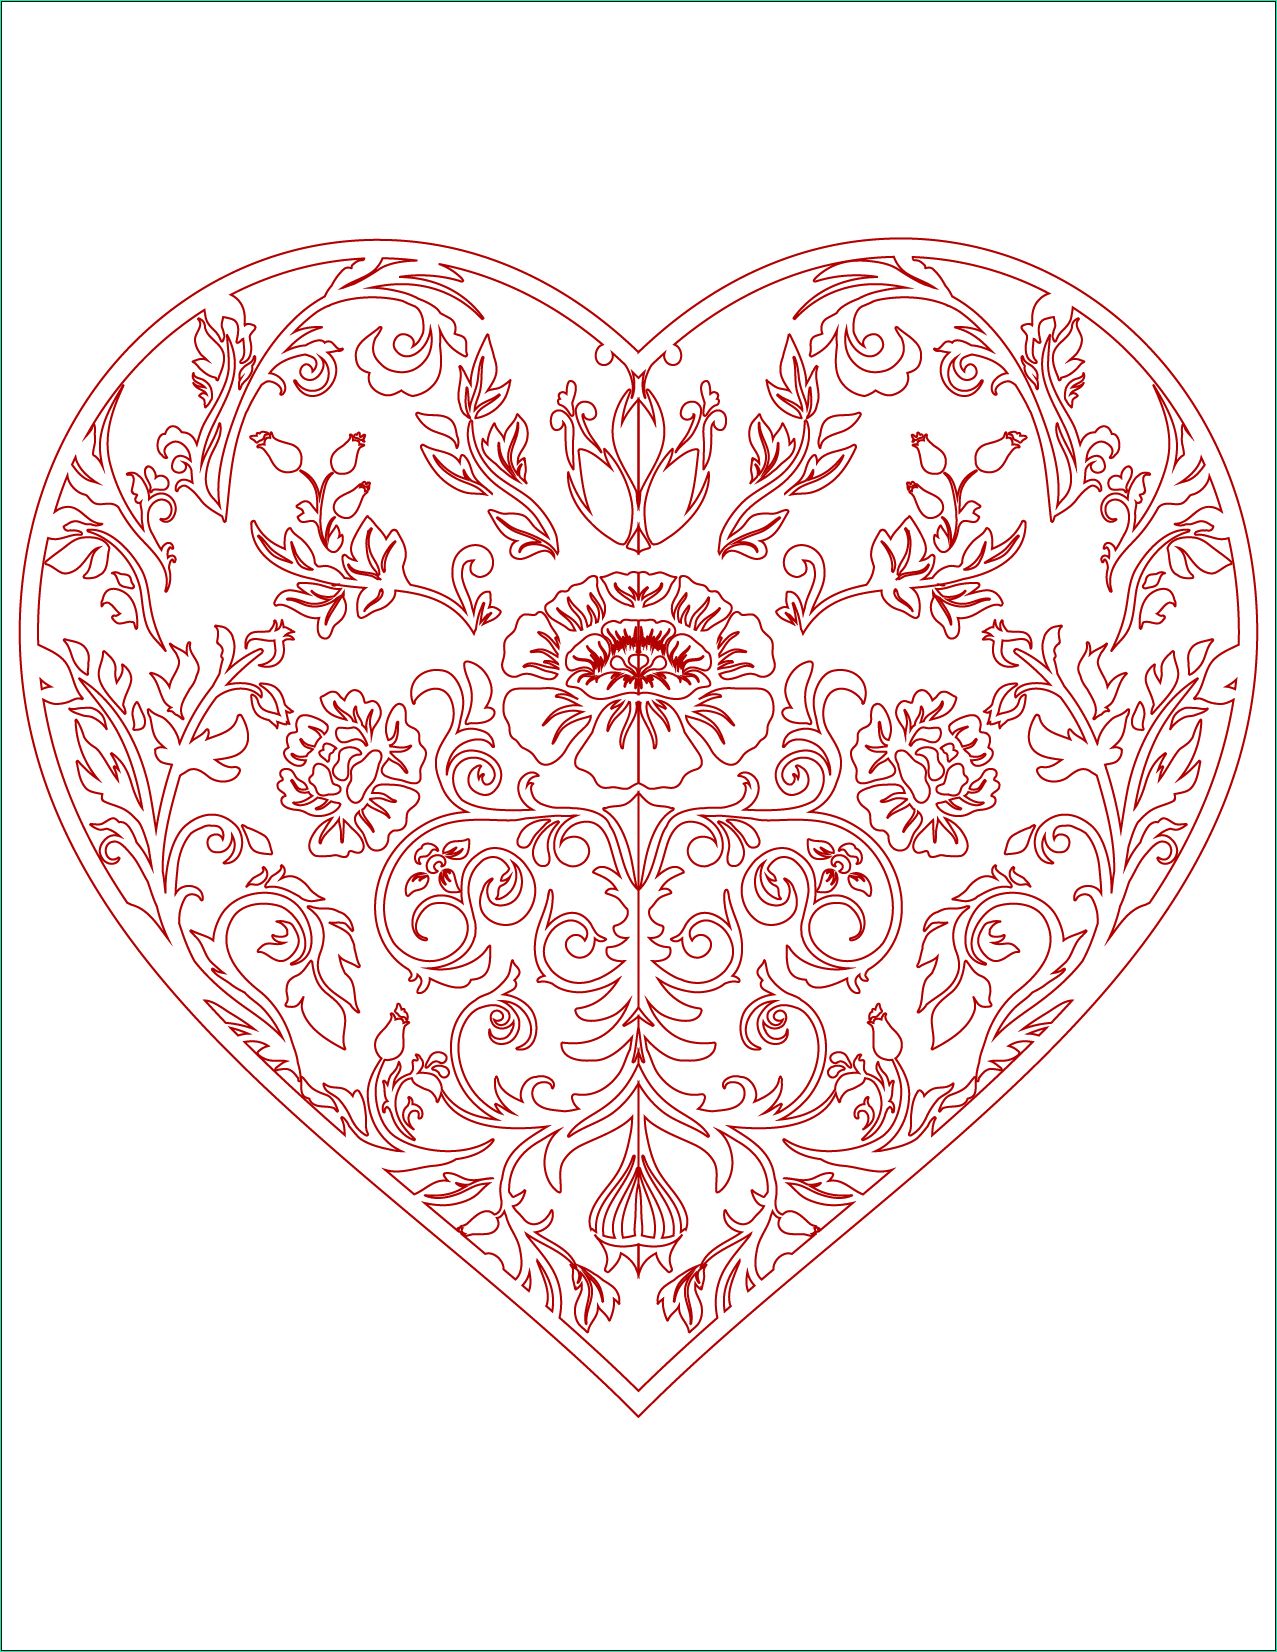 Coloriage De Coeur Élégant Collection Image De Bonjour D Amour Coloriage Coeur à Imprimer